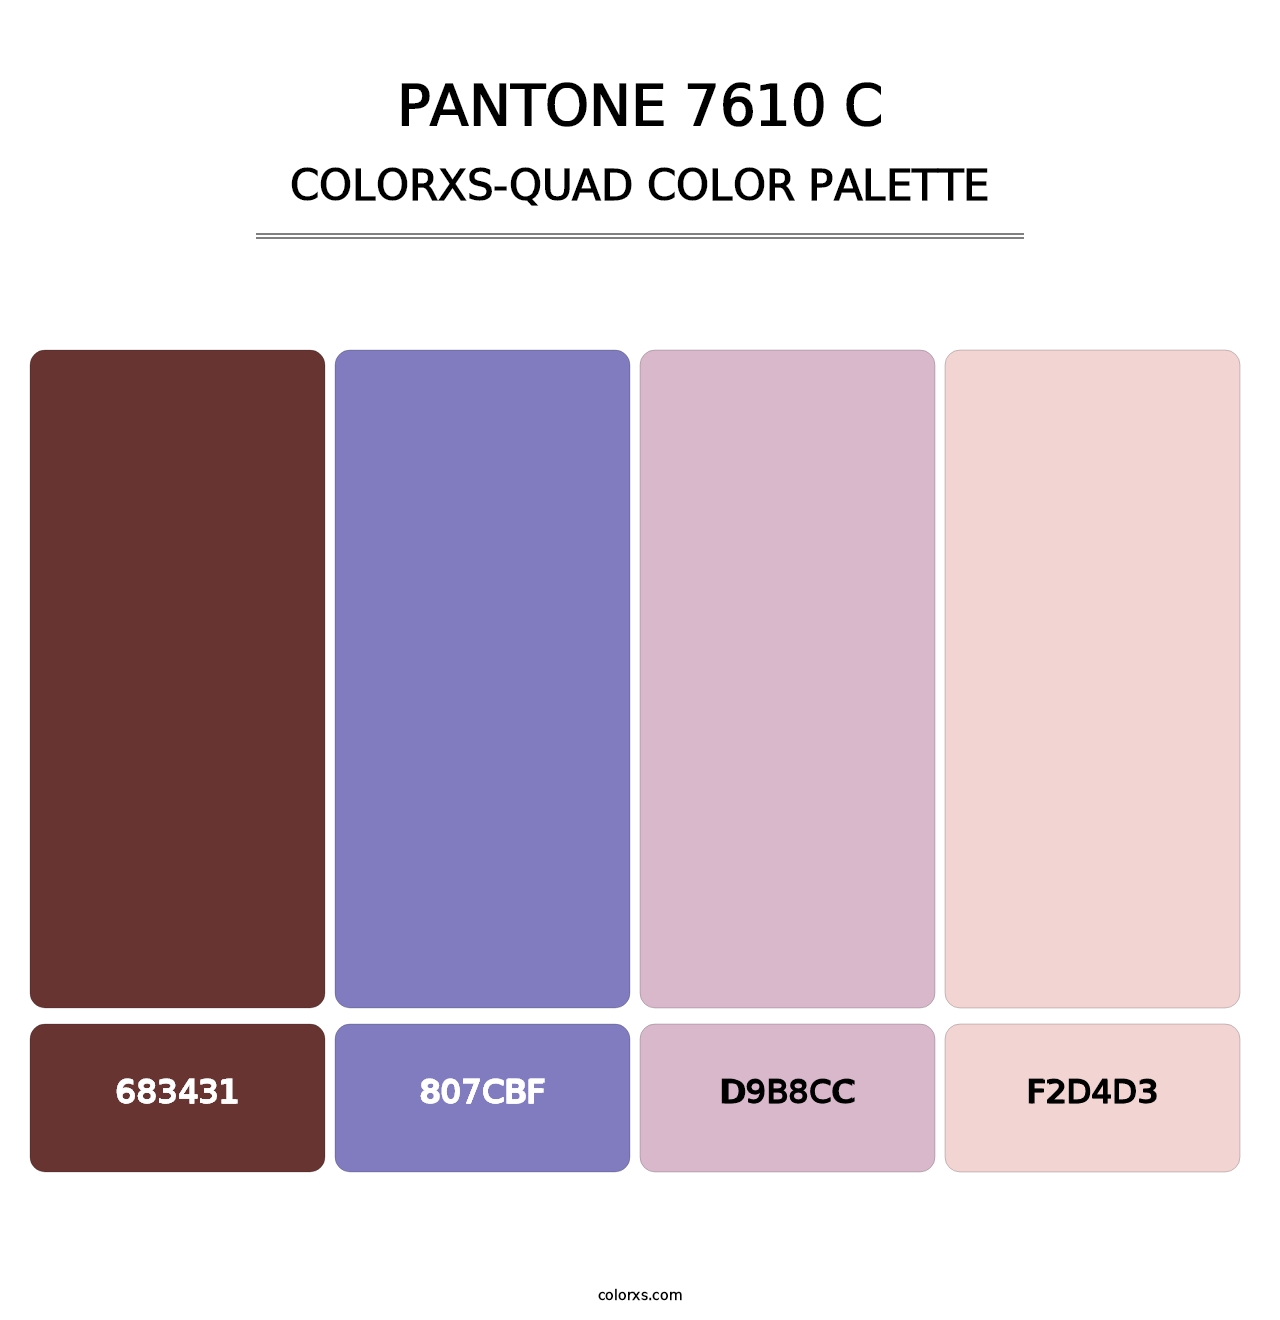 PANTONE 7610 C - Colorxs Quad Palette